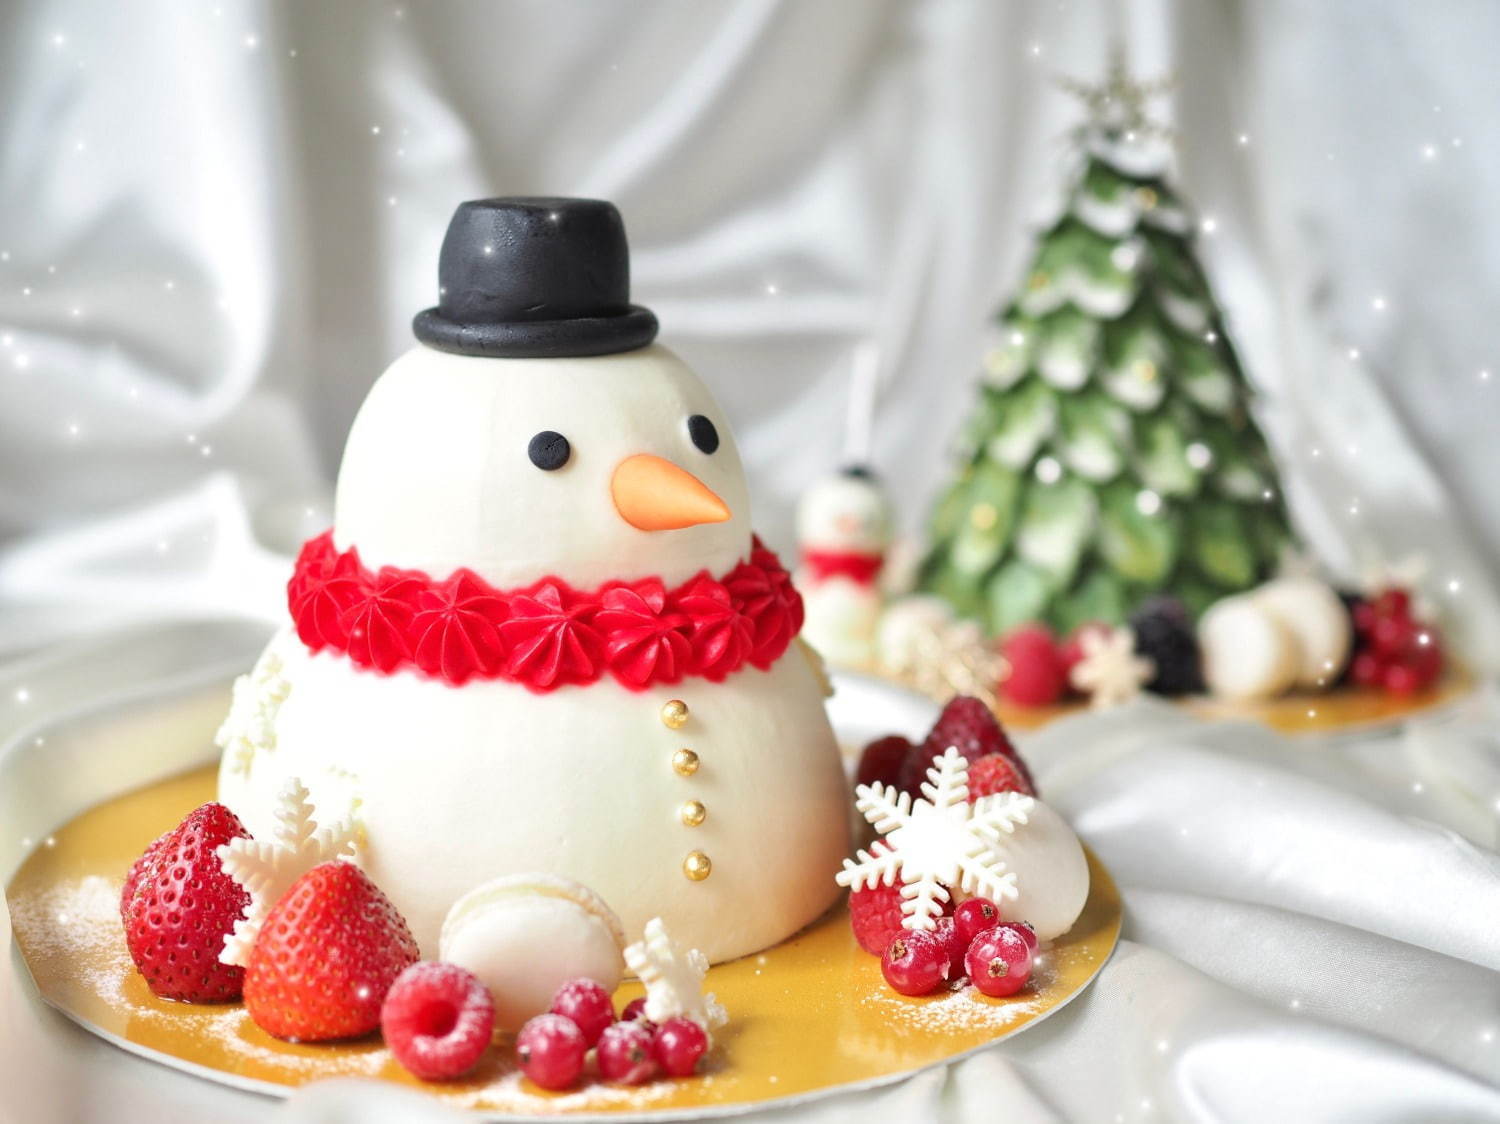 オーダーメイドケーキ専門店 ボンスイーツ のクリスマスケーキ 雪だるま ツリーを模って ファッションプレス